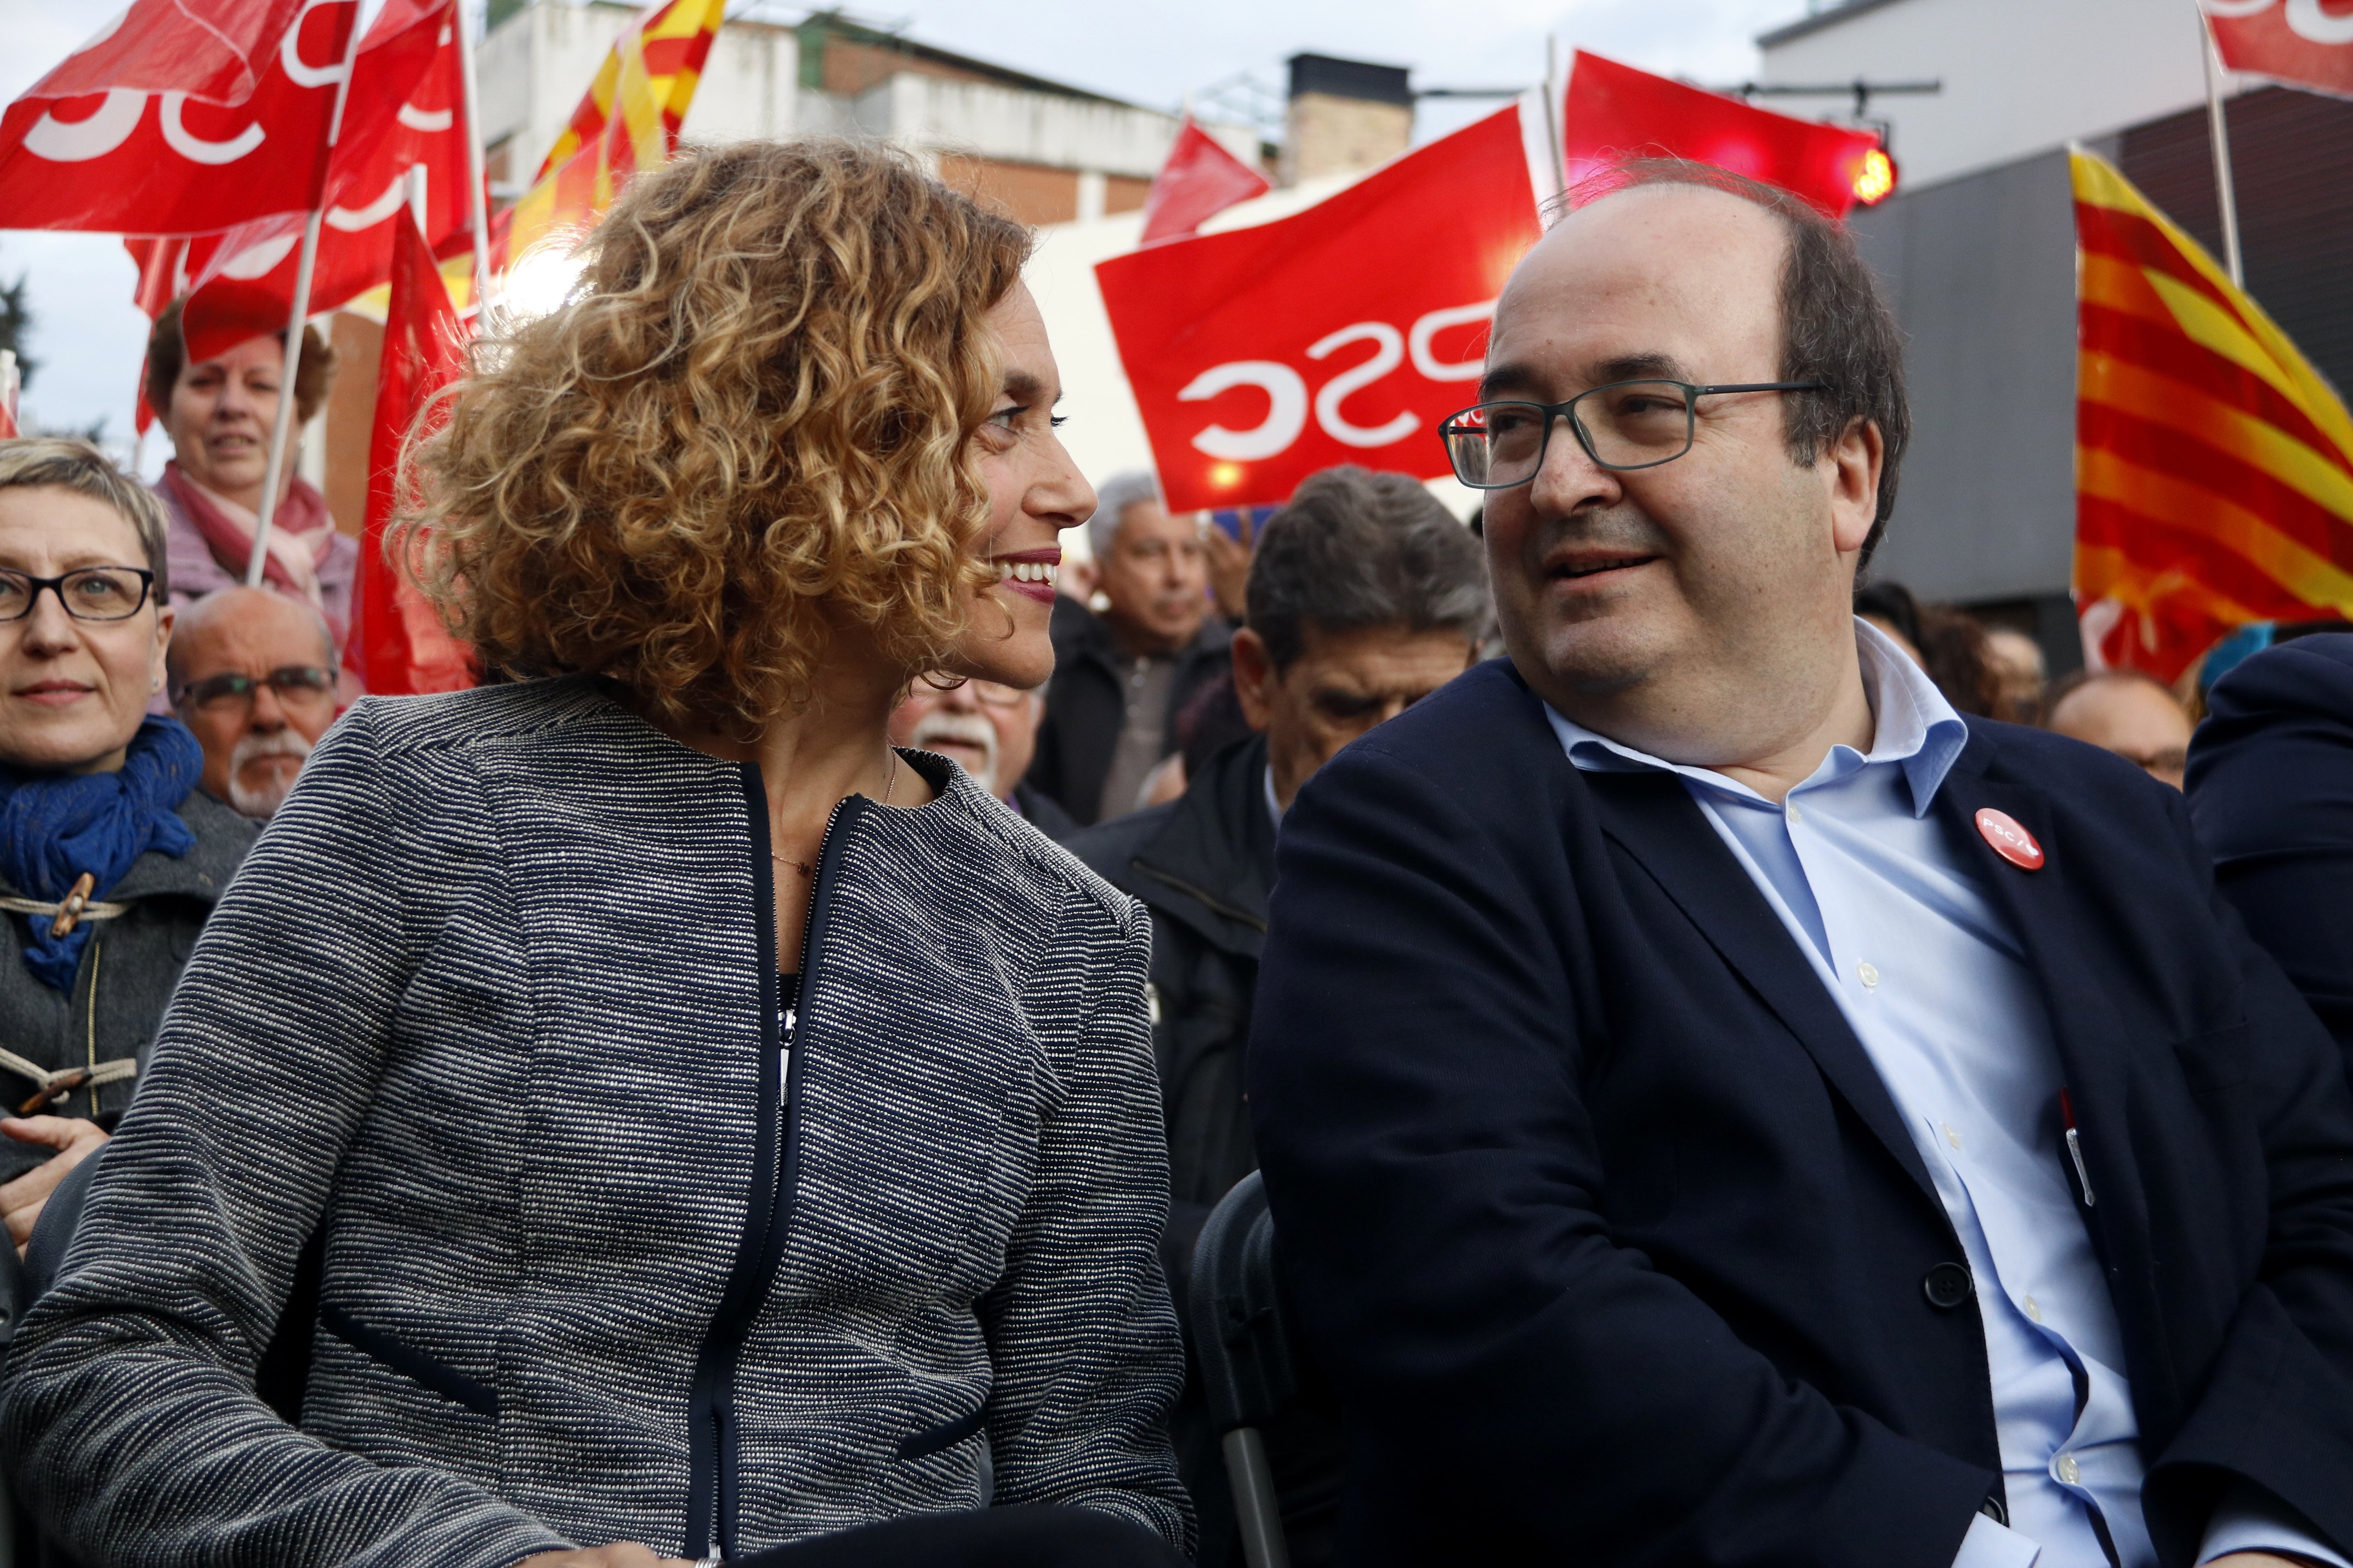 CIS Catalunya: Ligera ventaja del PSC sobre ERC en unas elecciones españolas